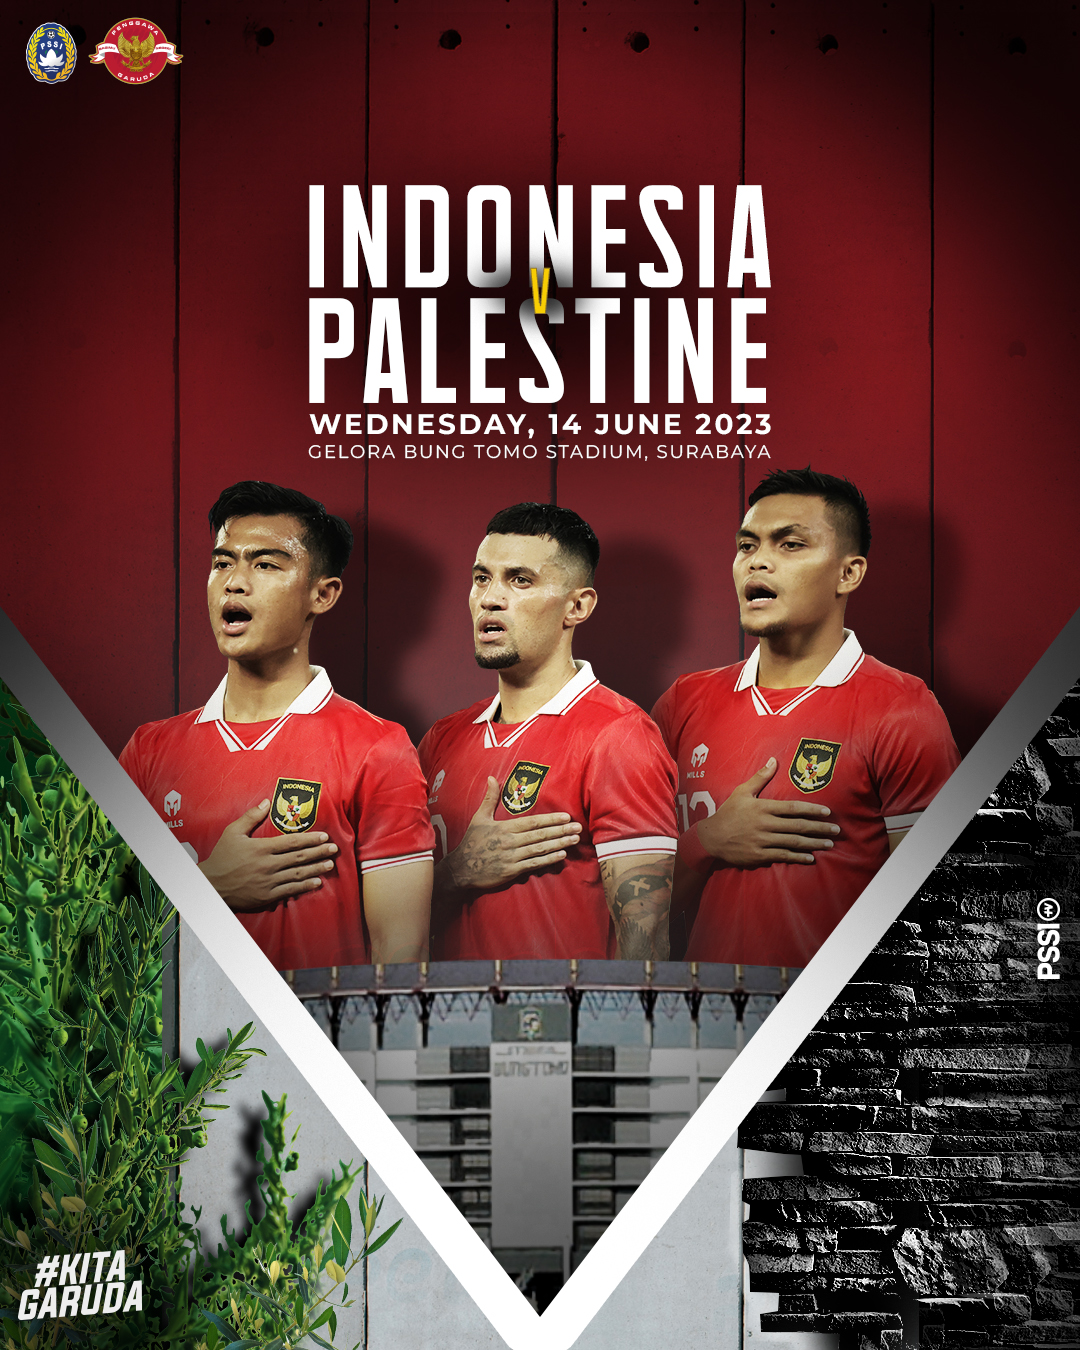 Siap Diserbu Besok Harga Tiket Fifa Matchday Indonesia Vs Palestina Di Gbt Surabaya Mulai Rp 4381